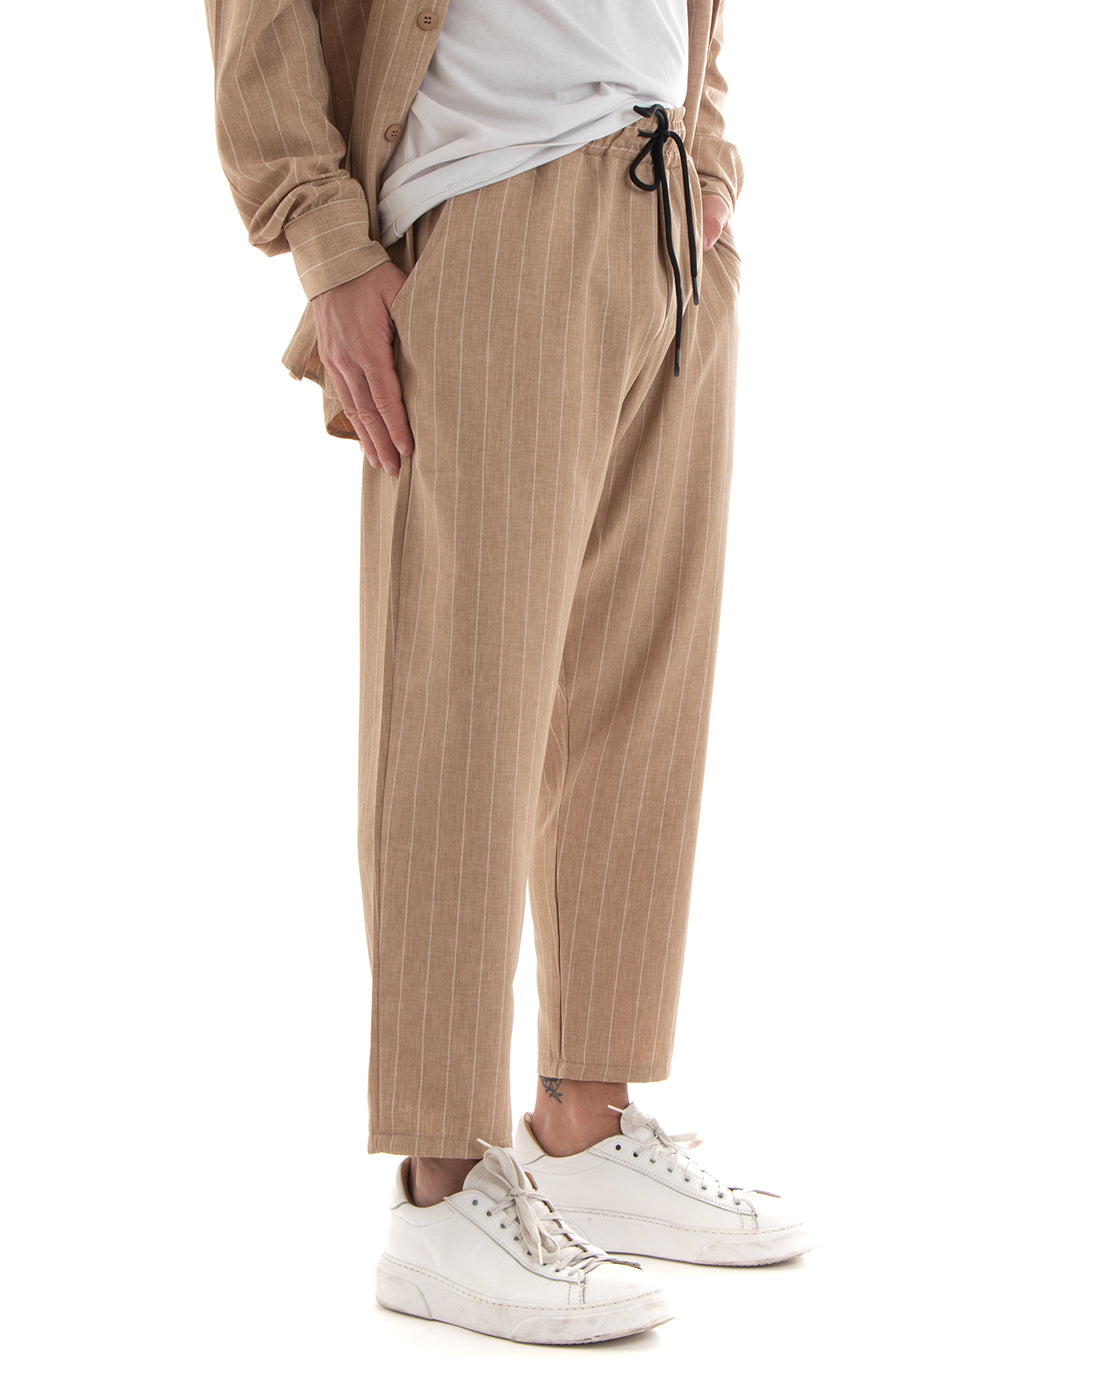 Completo Set Coordinato Uomo Viscosa Camicia Con Colletto Pantaloni Outfit Rigato Gessato Camel GIOSAL-OU2265A